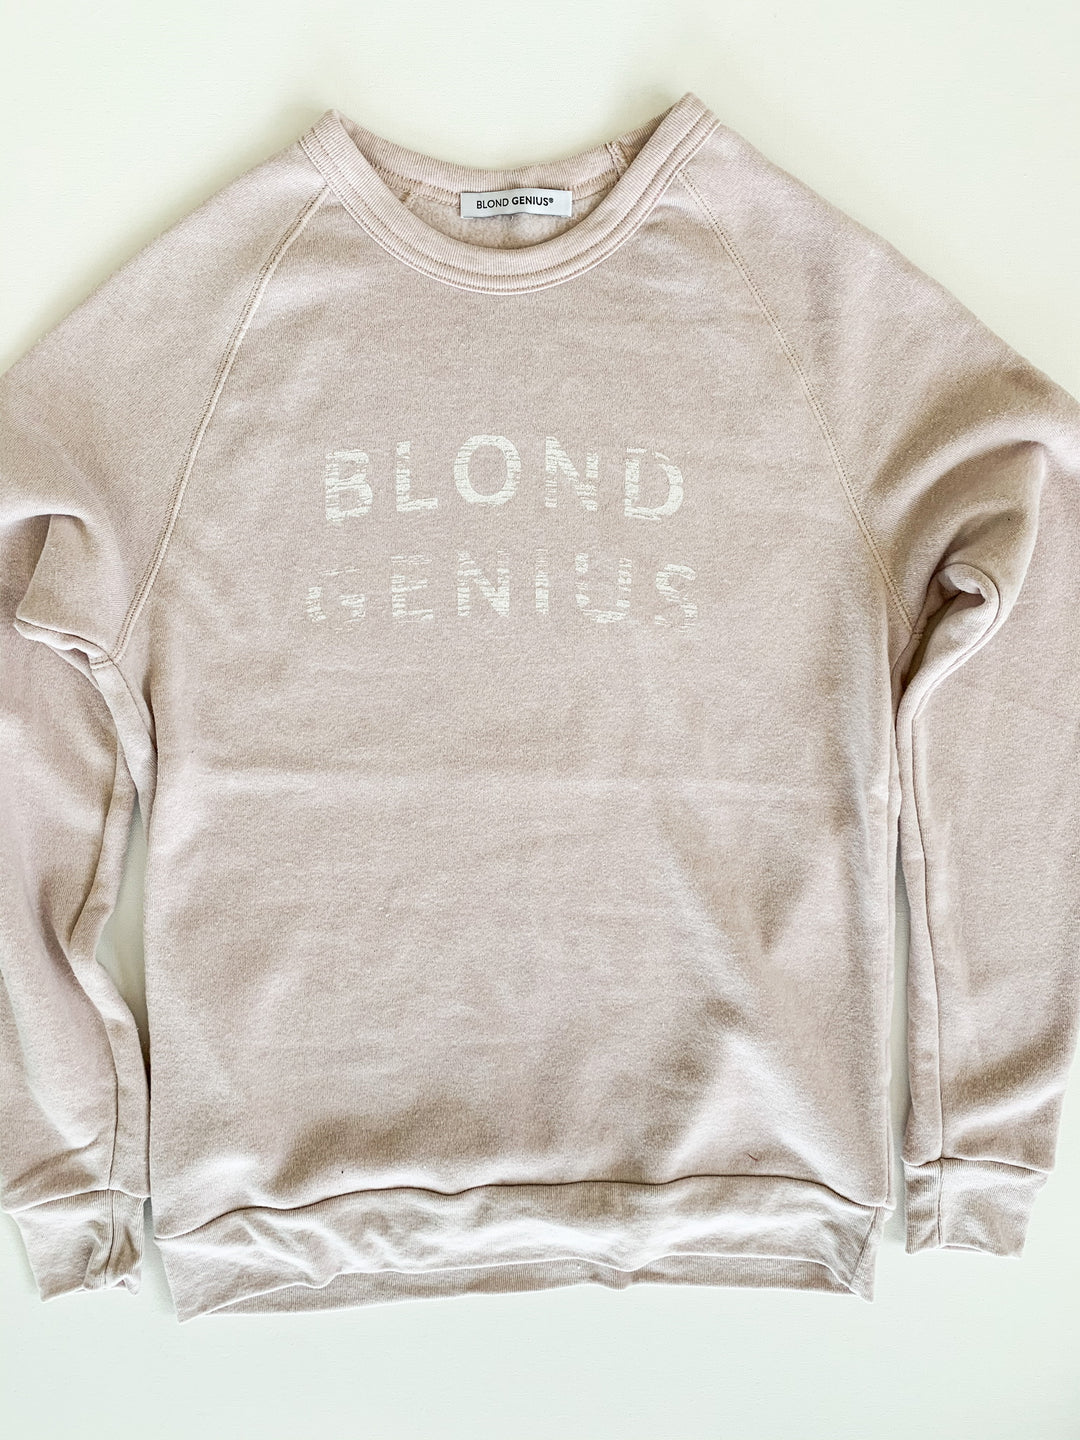 Blond Genius - Distressed Logo Sweatshirt in Rose Quartz